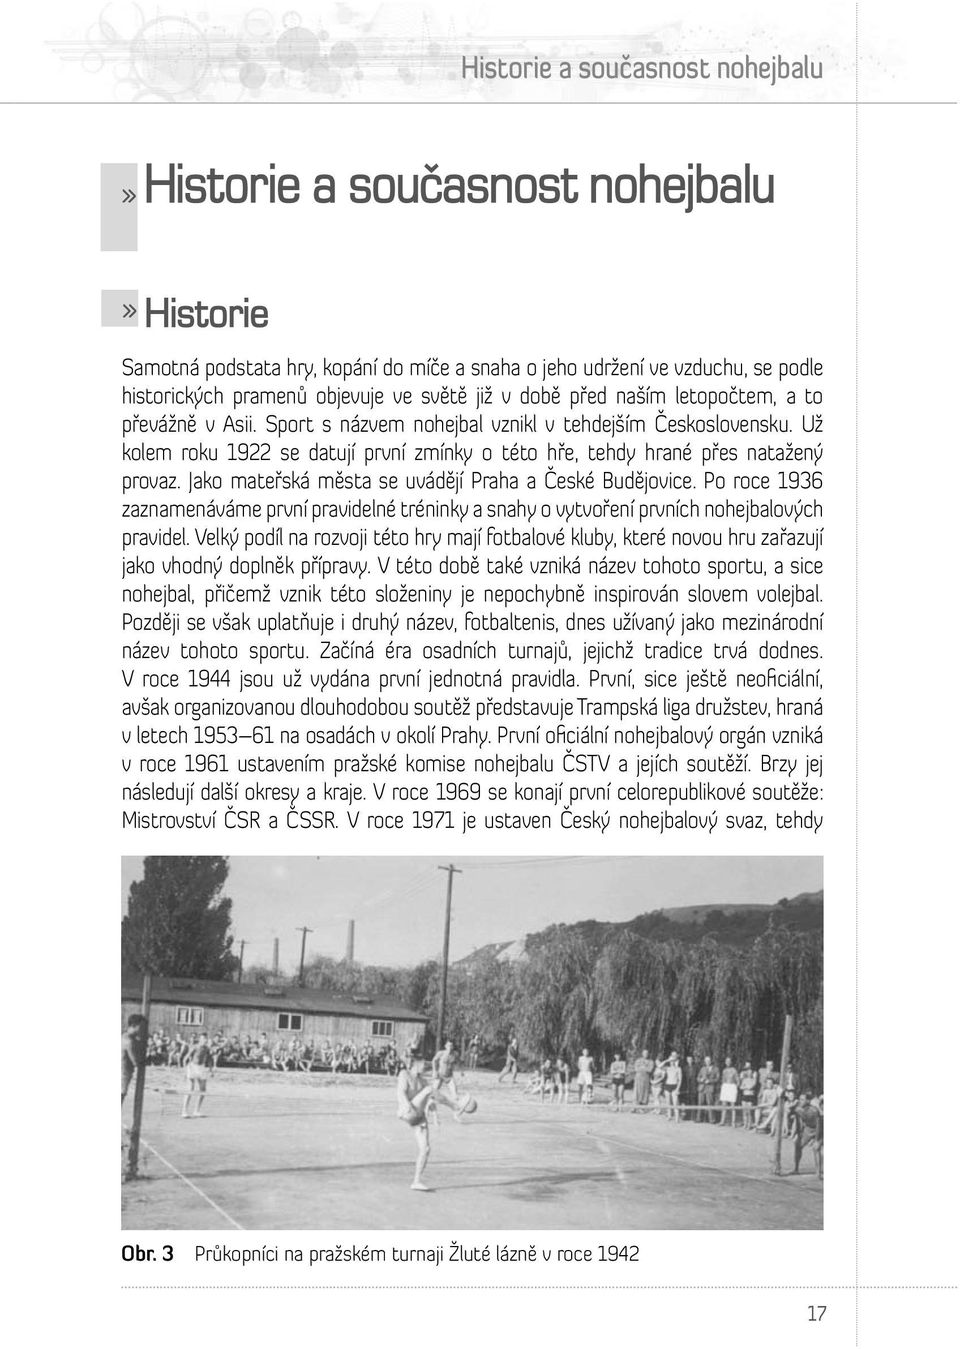 Jako mateřská města se uvádějí Praha a České Budějovice. Po roce 1936 zaznamenáváme první pravidelné tréninky a snahy o vytvoření prvních nohejbalových pravidel.